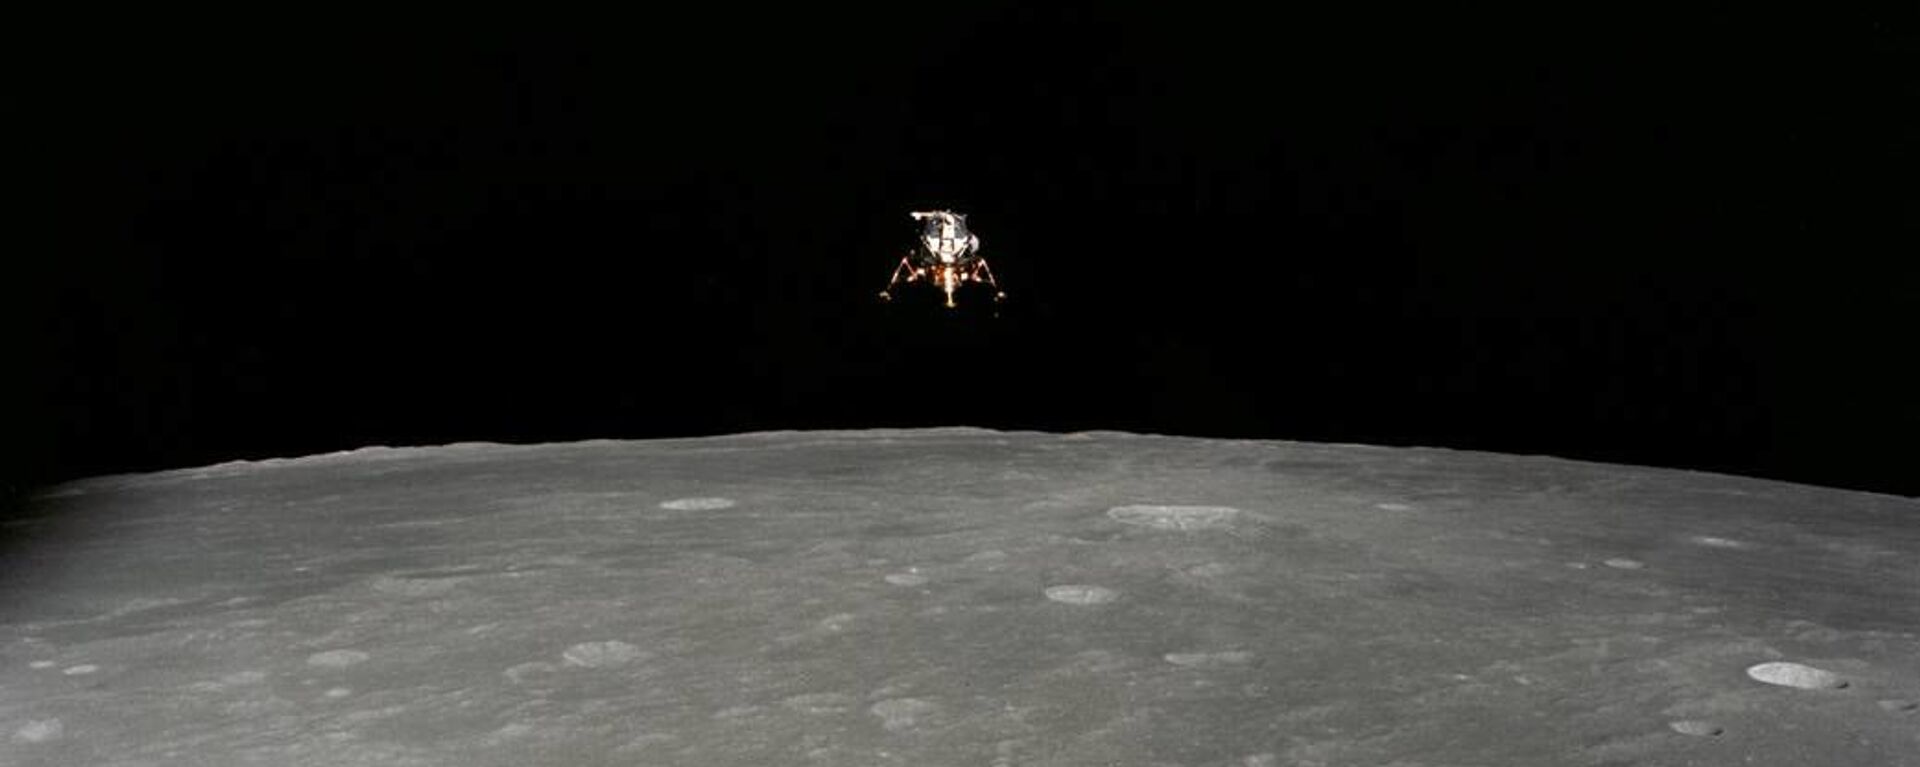 Span space. Аполлон 12 на Луне. Фото Луны. Лунная поверхность. Взлет с Луны.